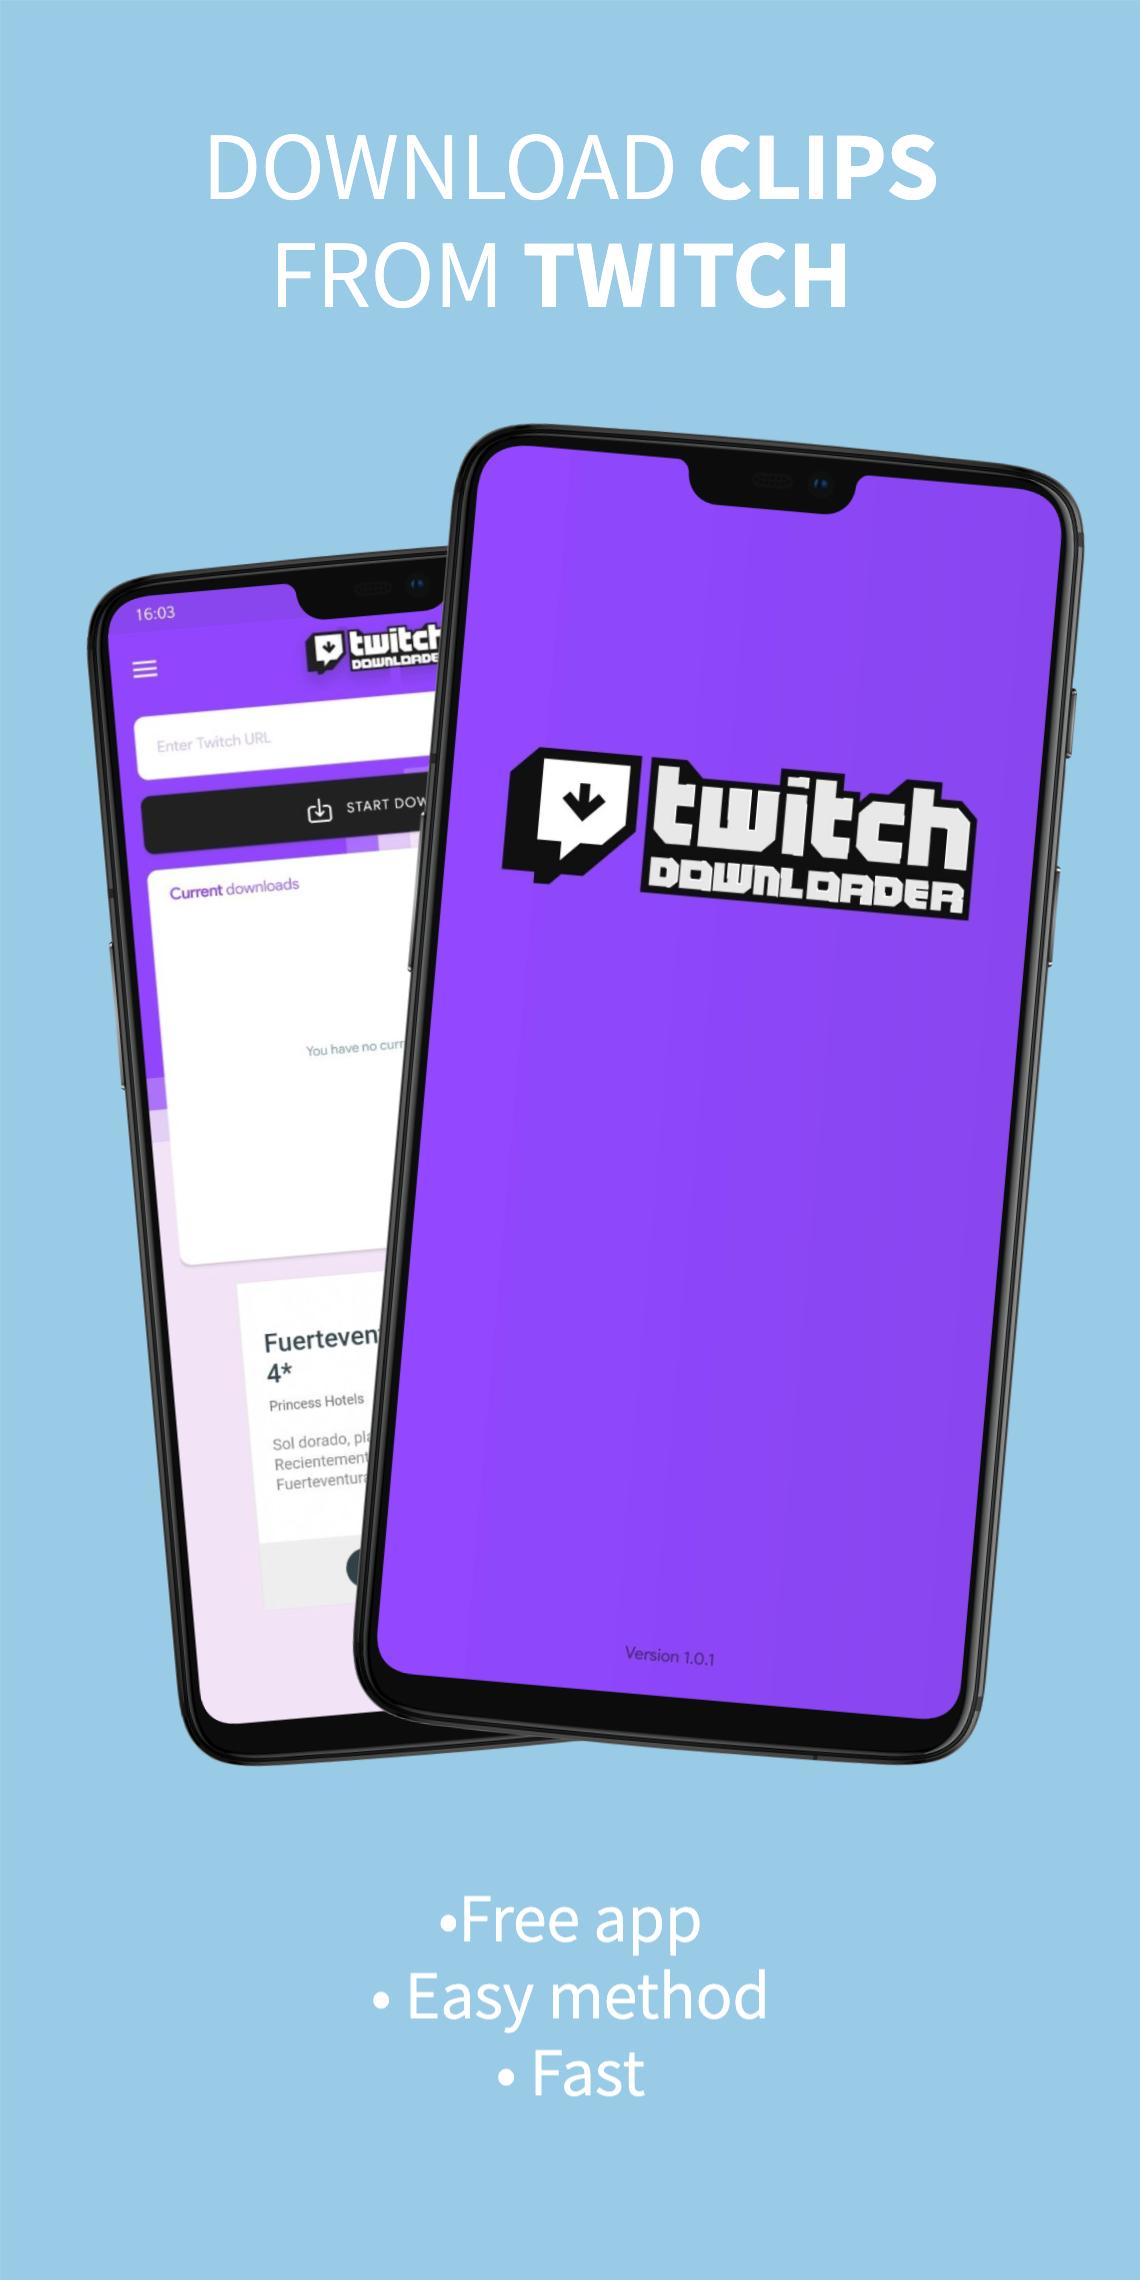 下载twitch视频 从twitch下载剪辑安卓下载 安卓版apk 免费下载